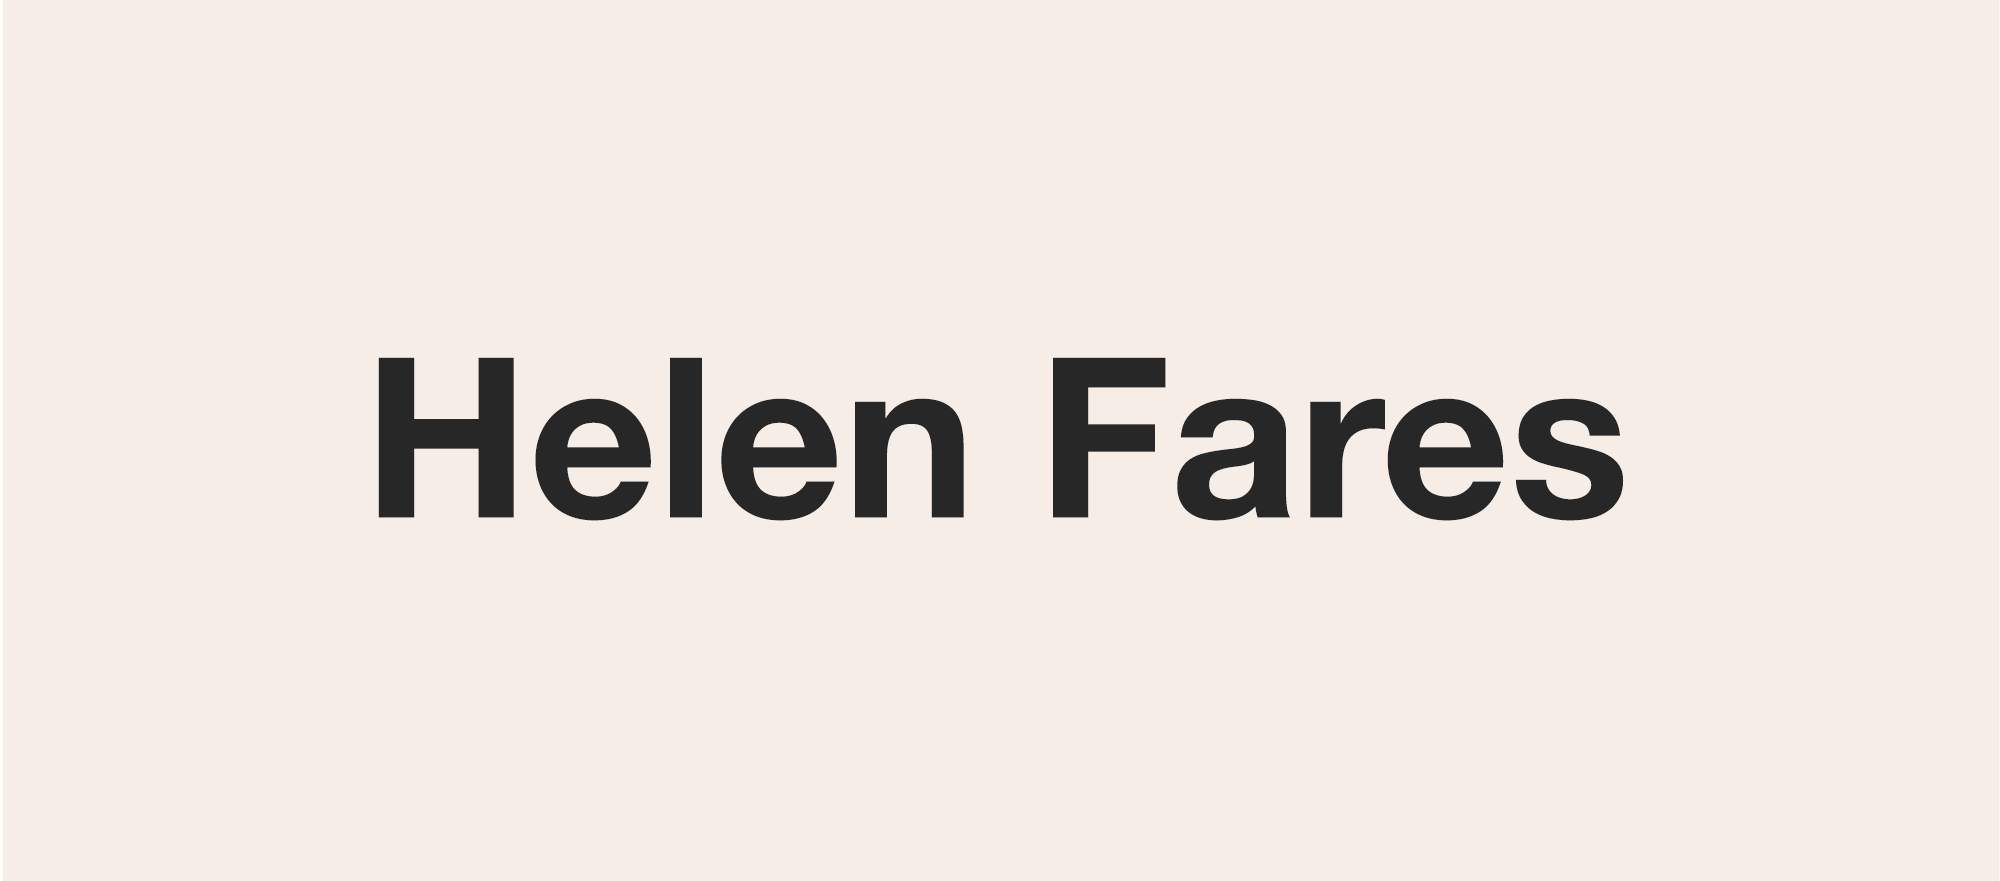 Helen Fares